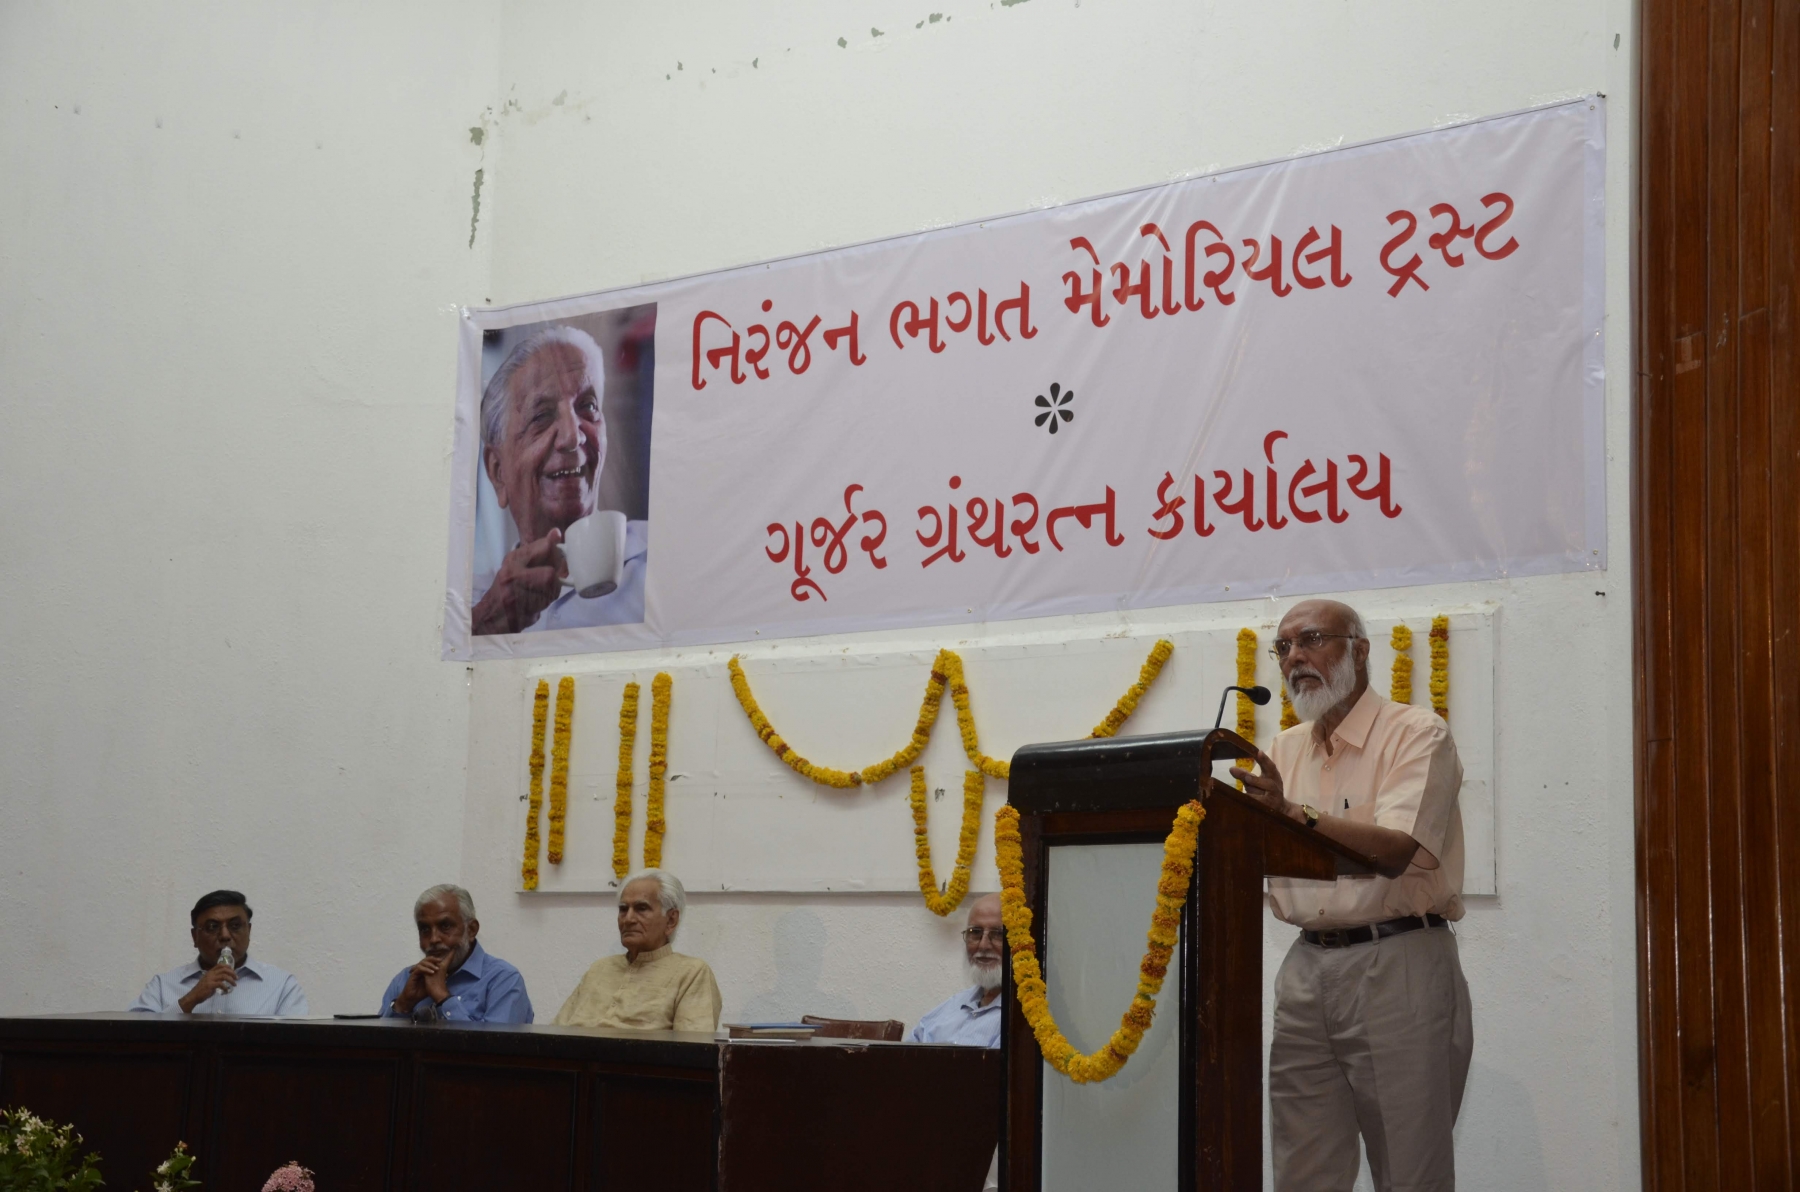 Shri Prafull Anubhai’s talk at the event